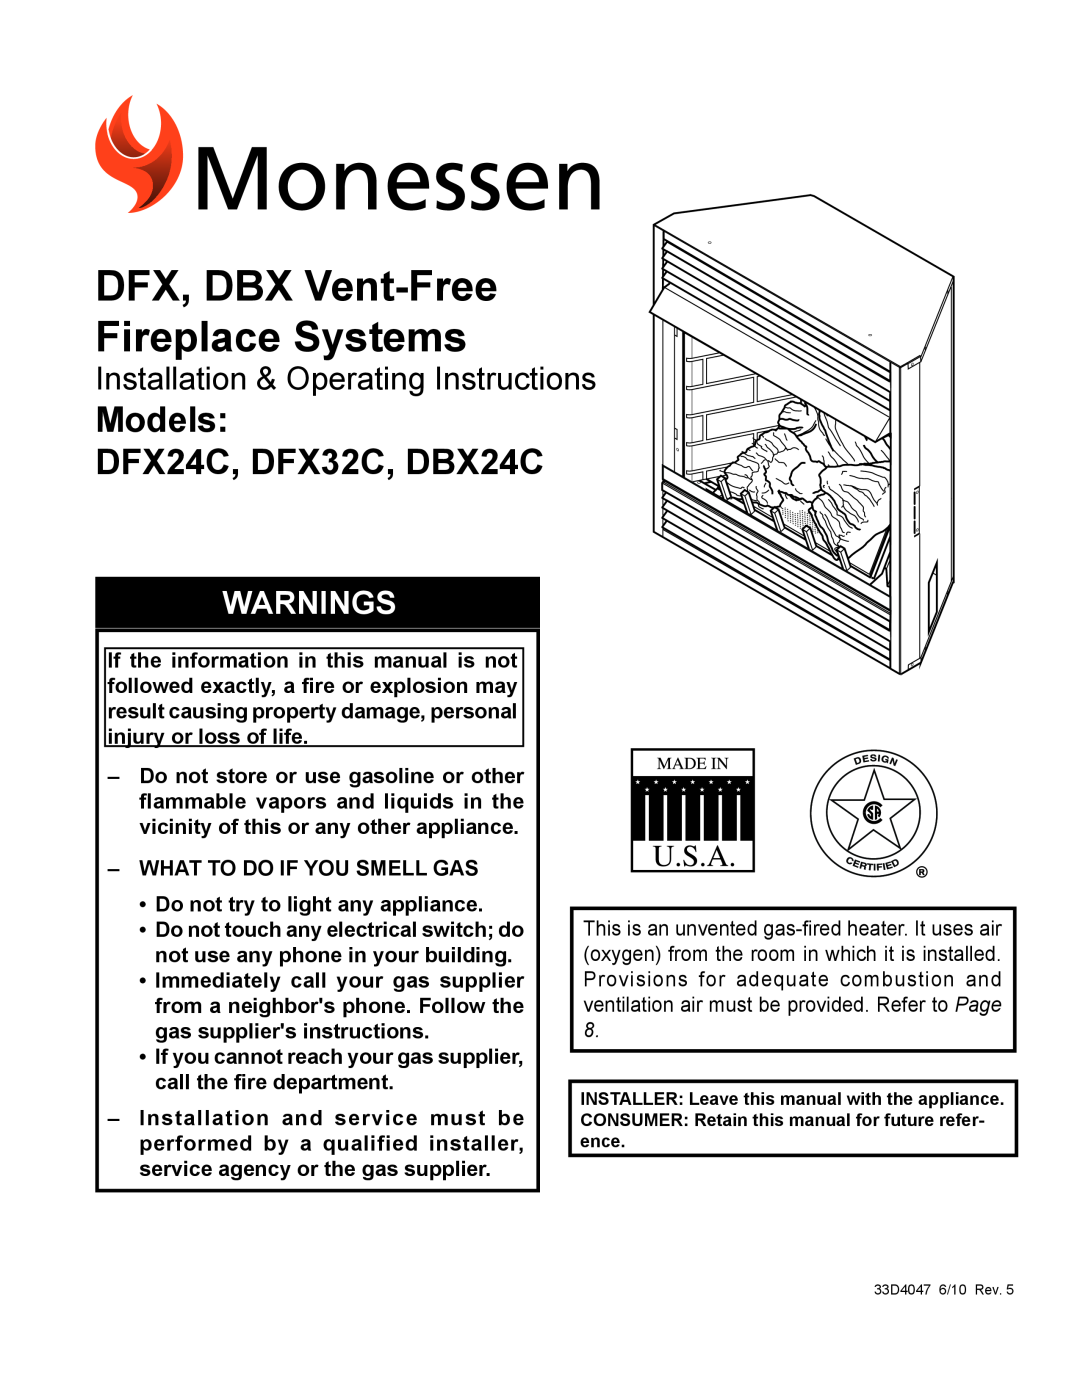 Monessen Hearth manual DFX, DBX Vent-FreeFireplace Systems, Models DFX24C, DFX32C, DBX24C, Warnings 